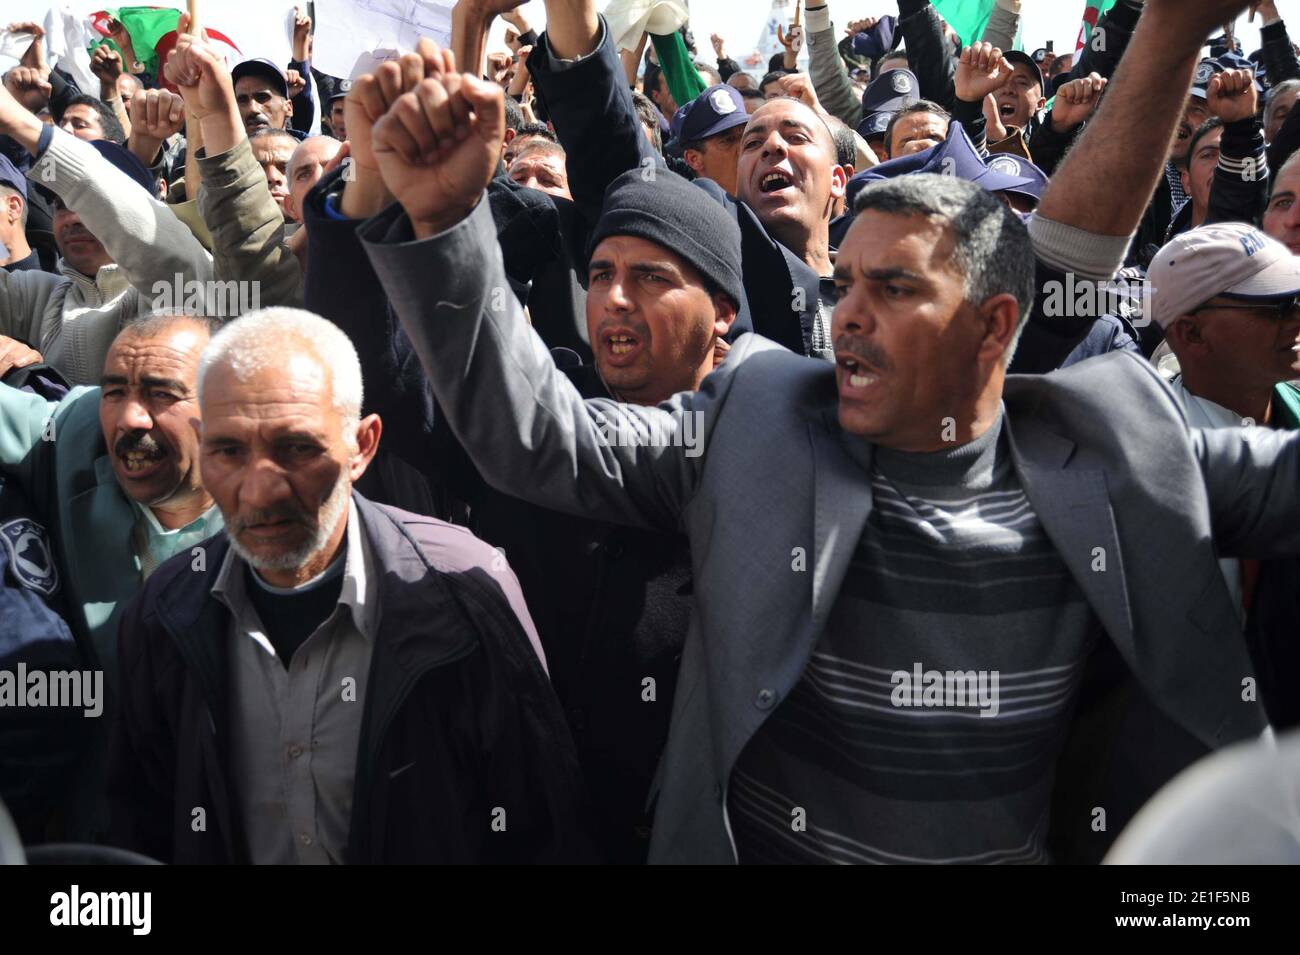 Protesta della polizia comunitaria e gridano slogan durante una manifestazione ad Algeri, Algeria, il 7 marzo 2011. Il governo ha detto che disband la propria forza e i funzionari vogliono che il governo soddisfi le loro richieste di pensioni. I manifestanti, stimati dagli organizzatori a più di 10,000, si sono sfidati a vietare le manifestazioni nella capitale e hanno spinto attraverso diversi cordoni di polizia a spostarsi da Piazza Martiri all'Assemblea Nazionale. I manifestanti, stimati dagli organizzatori a più di 10,000, si sono sfidati a vietare le manifestazioni nella capitale e hanno spinto attraverso diversi cordoni di polizia a muoversi Foto Stock